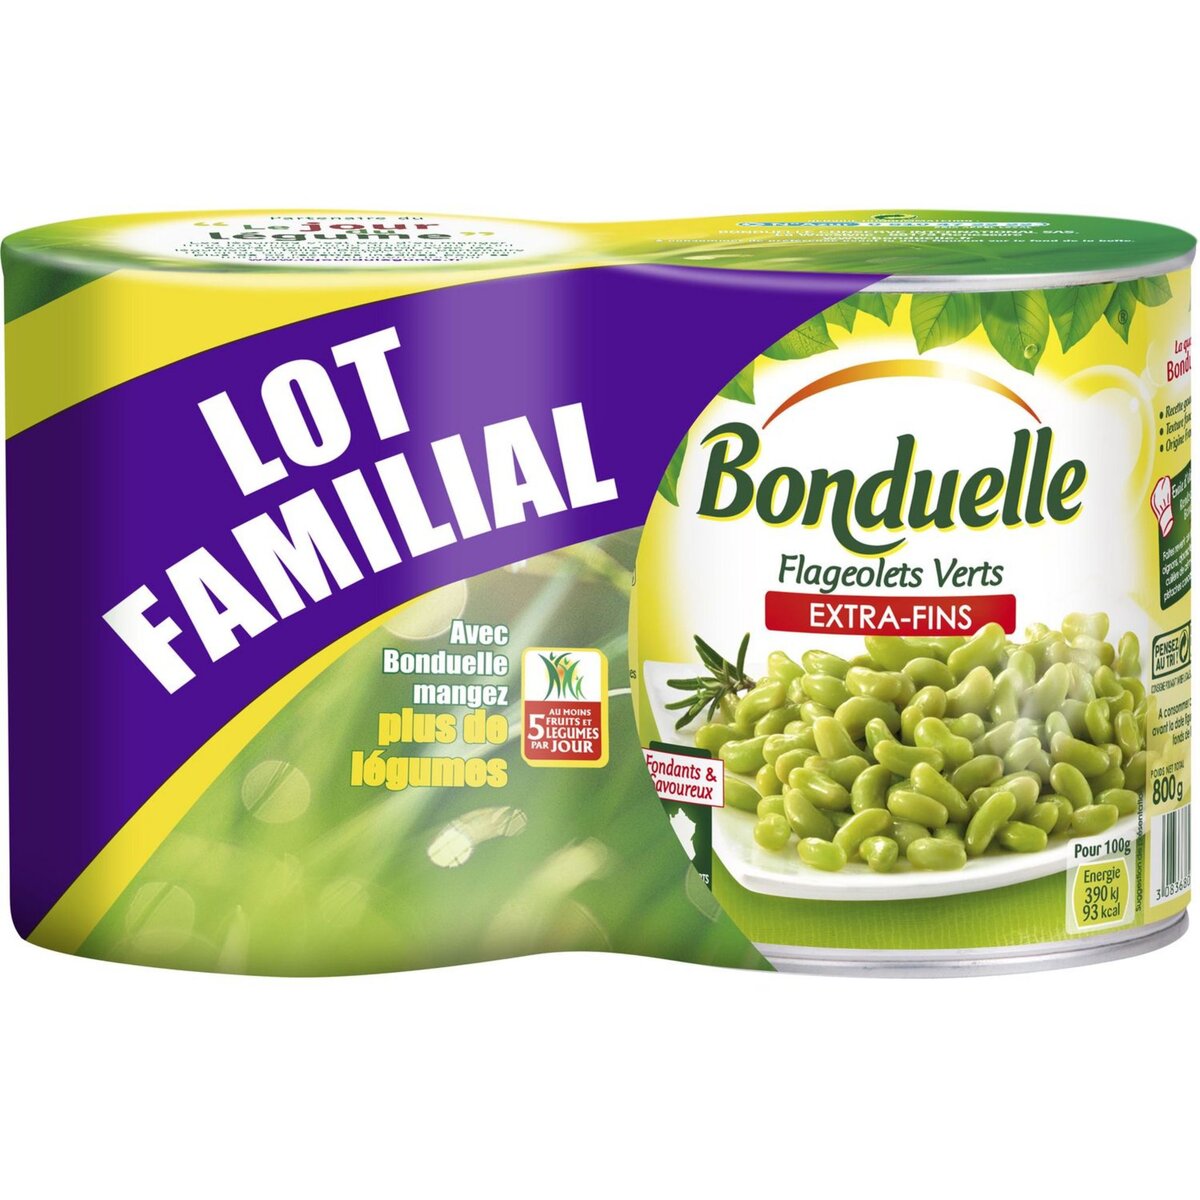 BONDUELLE Bonduelle Flageolets extra fins fondants et savoureux 2x530g 2x530g